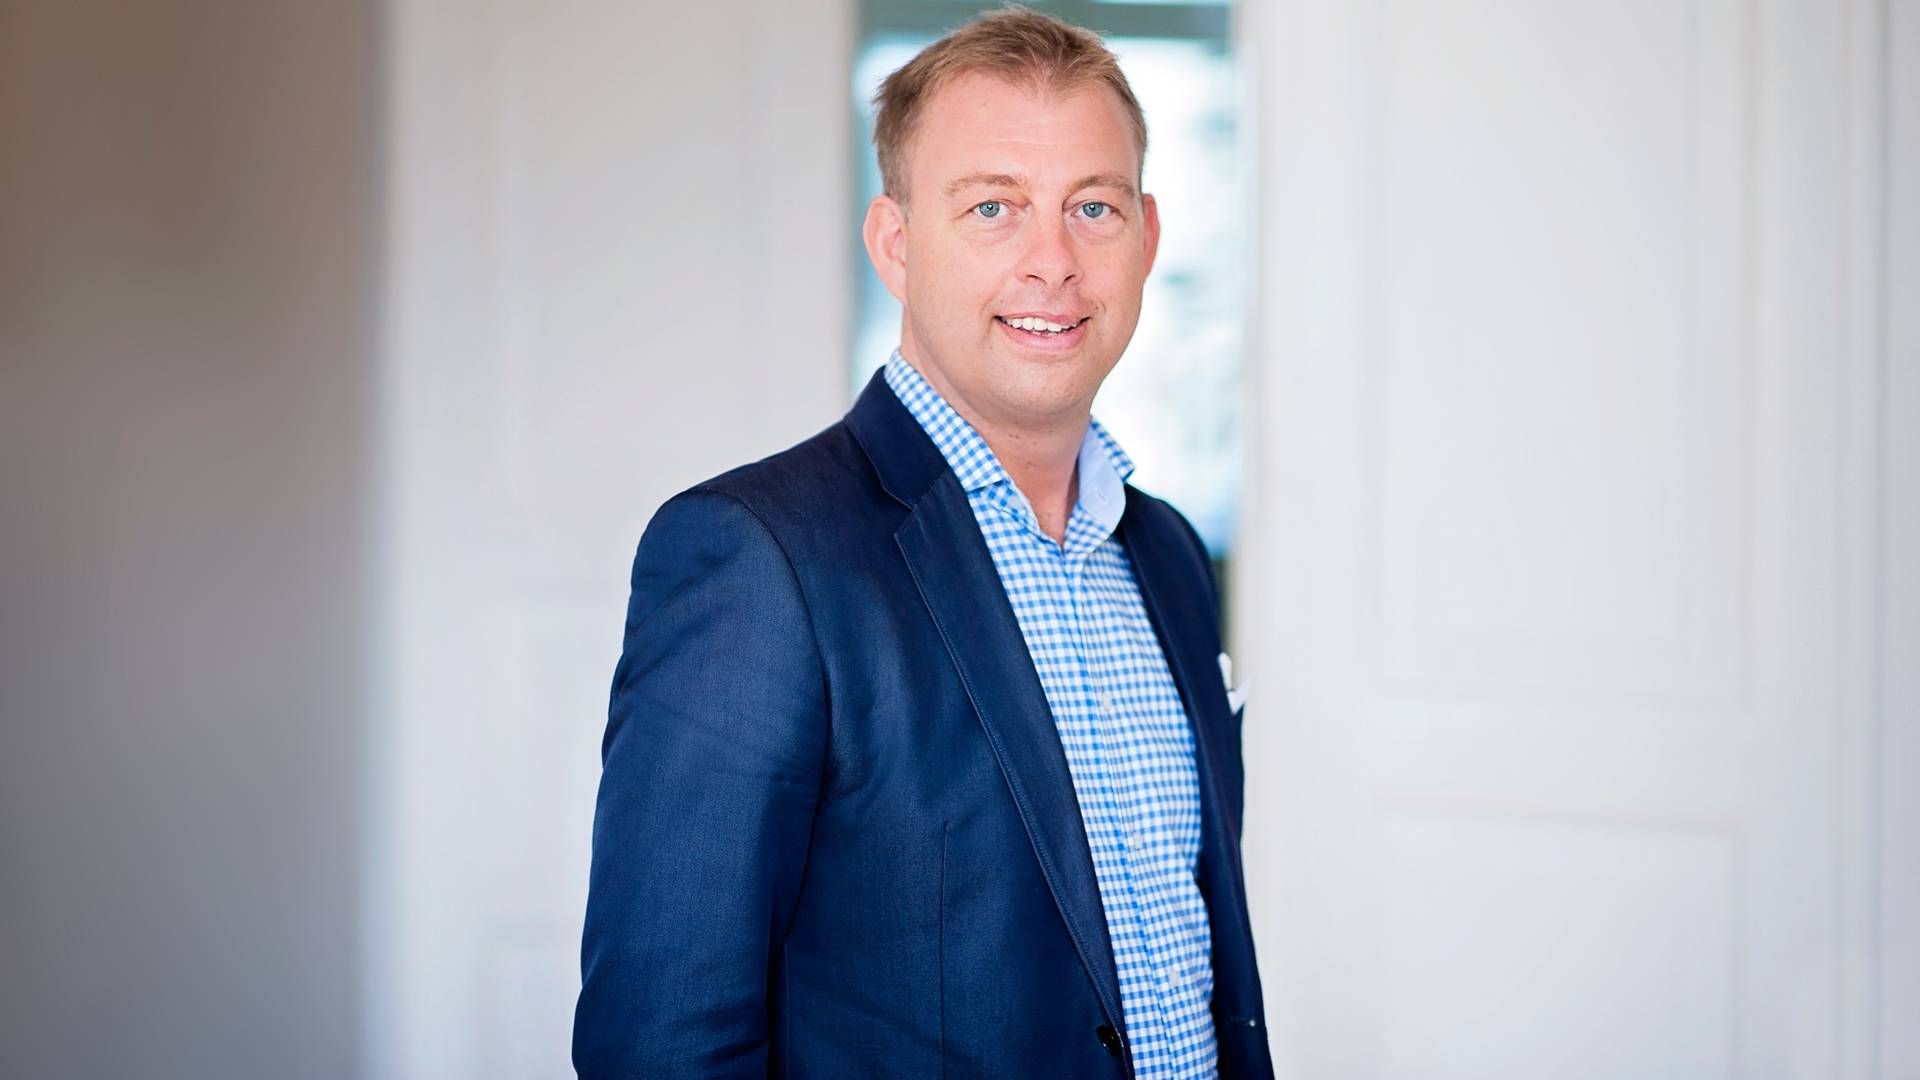 NY ØKONOMISJEF: Thomas Pehrsson er utnevnt som ny økonomidirektør i Kjell Group, eierselskapet til Kjell & Company. | Foto: Kjell Group